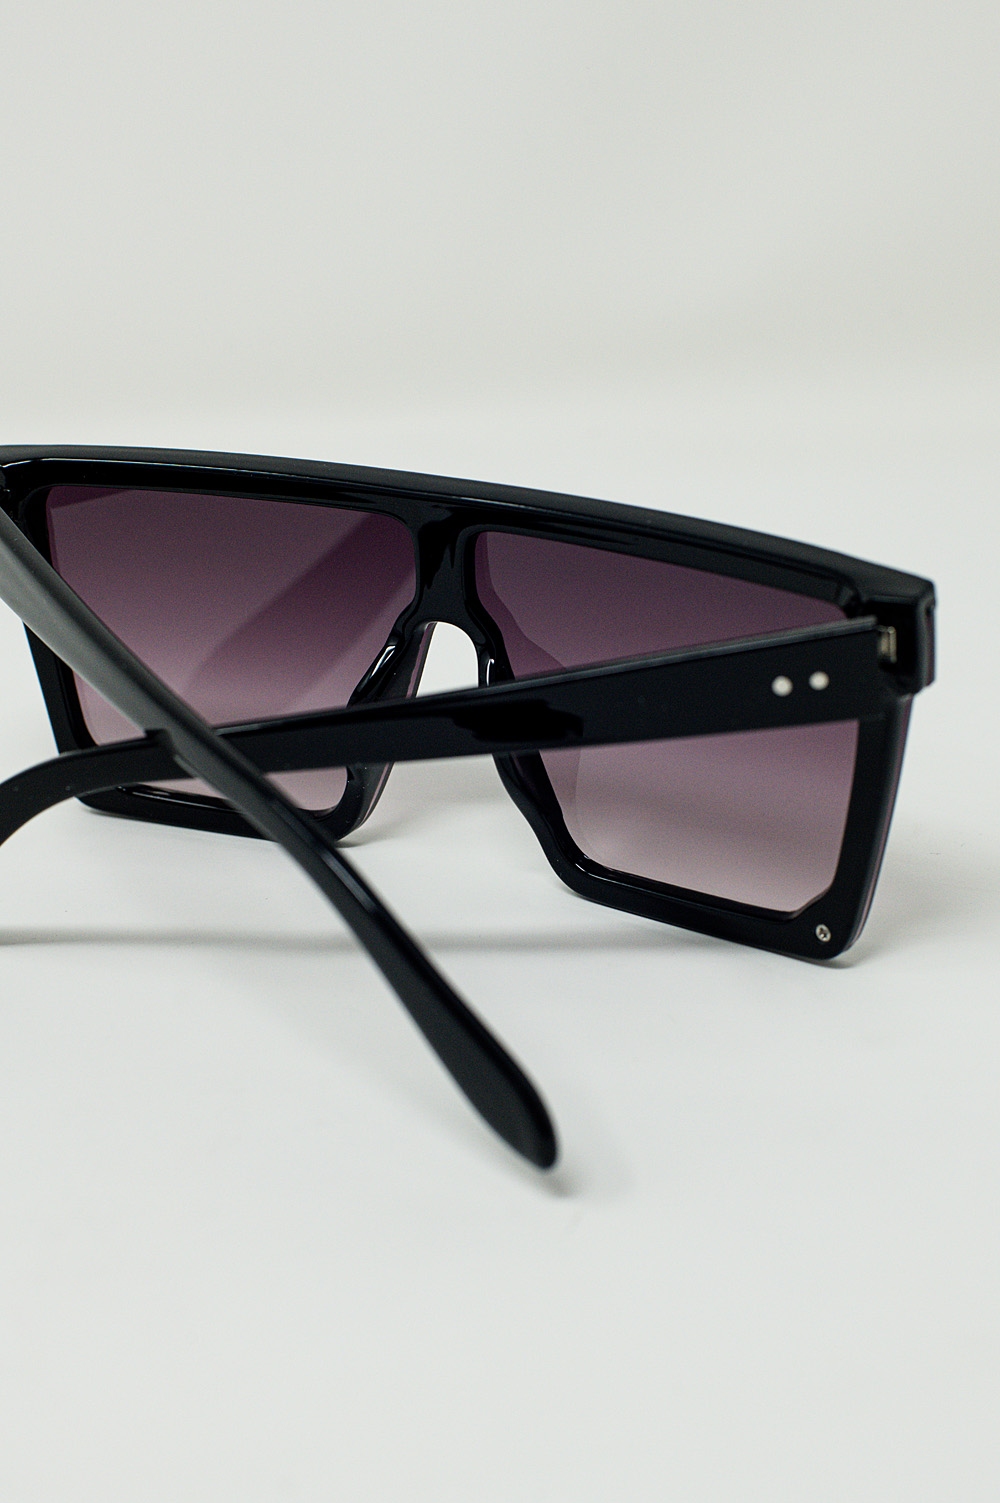 Gafas de sol cuadradas y extragrandes estilo años 70 en negro